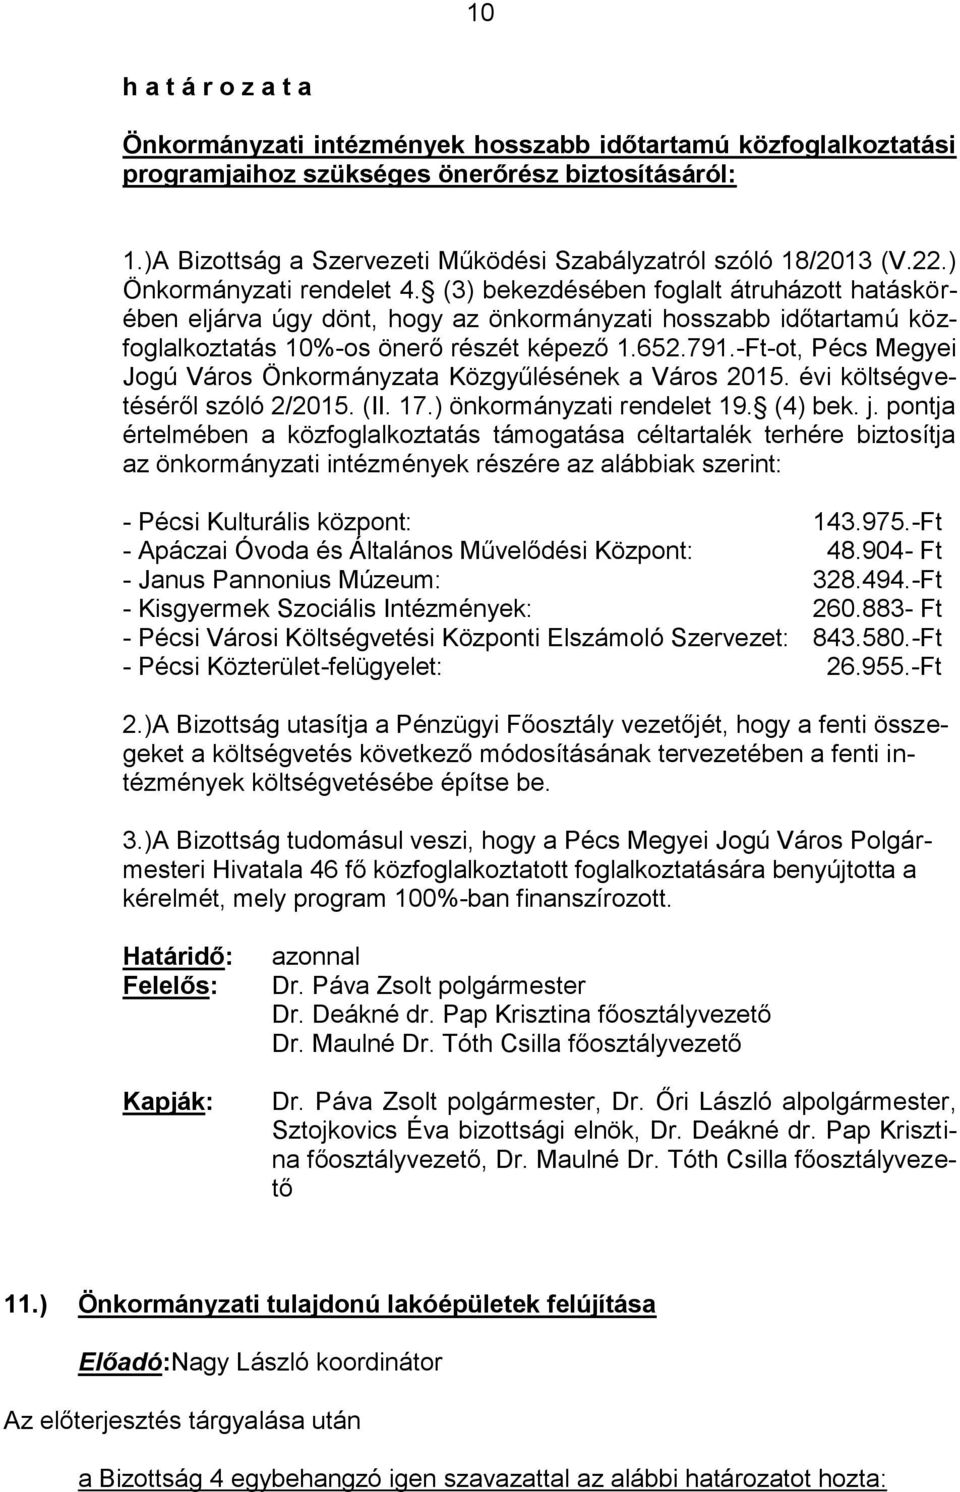 -Ft-ot, Pécs Megyei Jogú Város Önkormányzata Közgyűlésének a Város 2015. évi költségvetéséről szóló 2/2015. (II. 17.) önkormányzati rendelet 19. (4) bek. j.